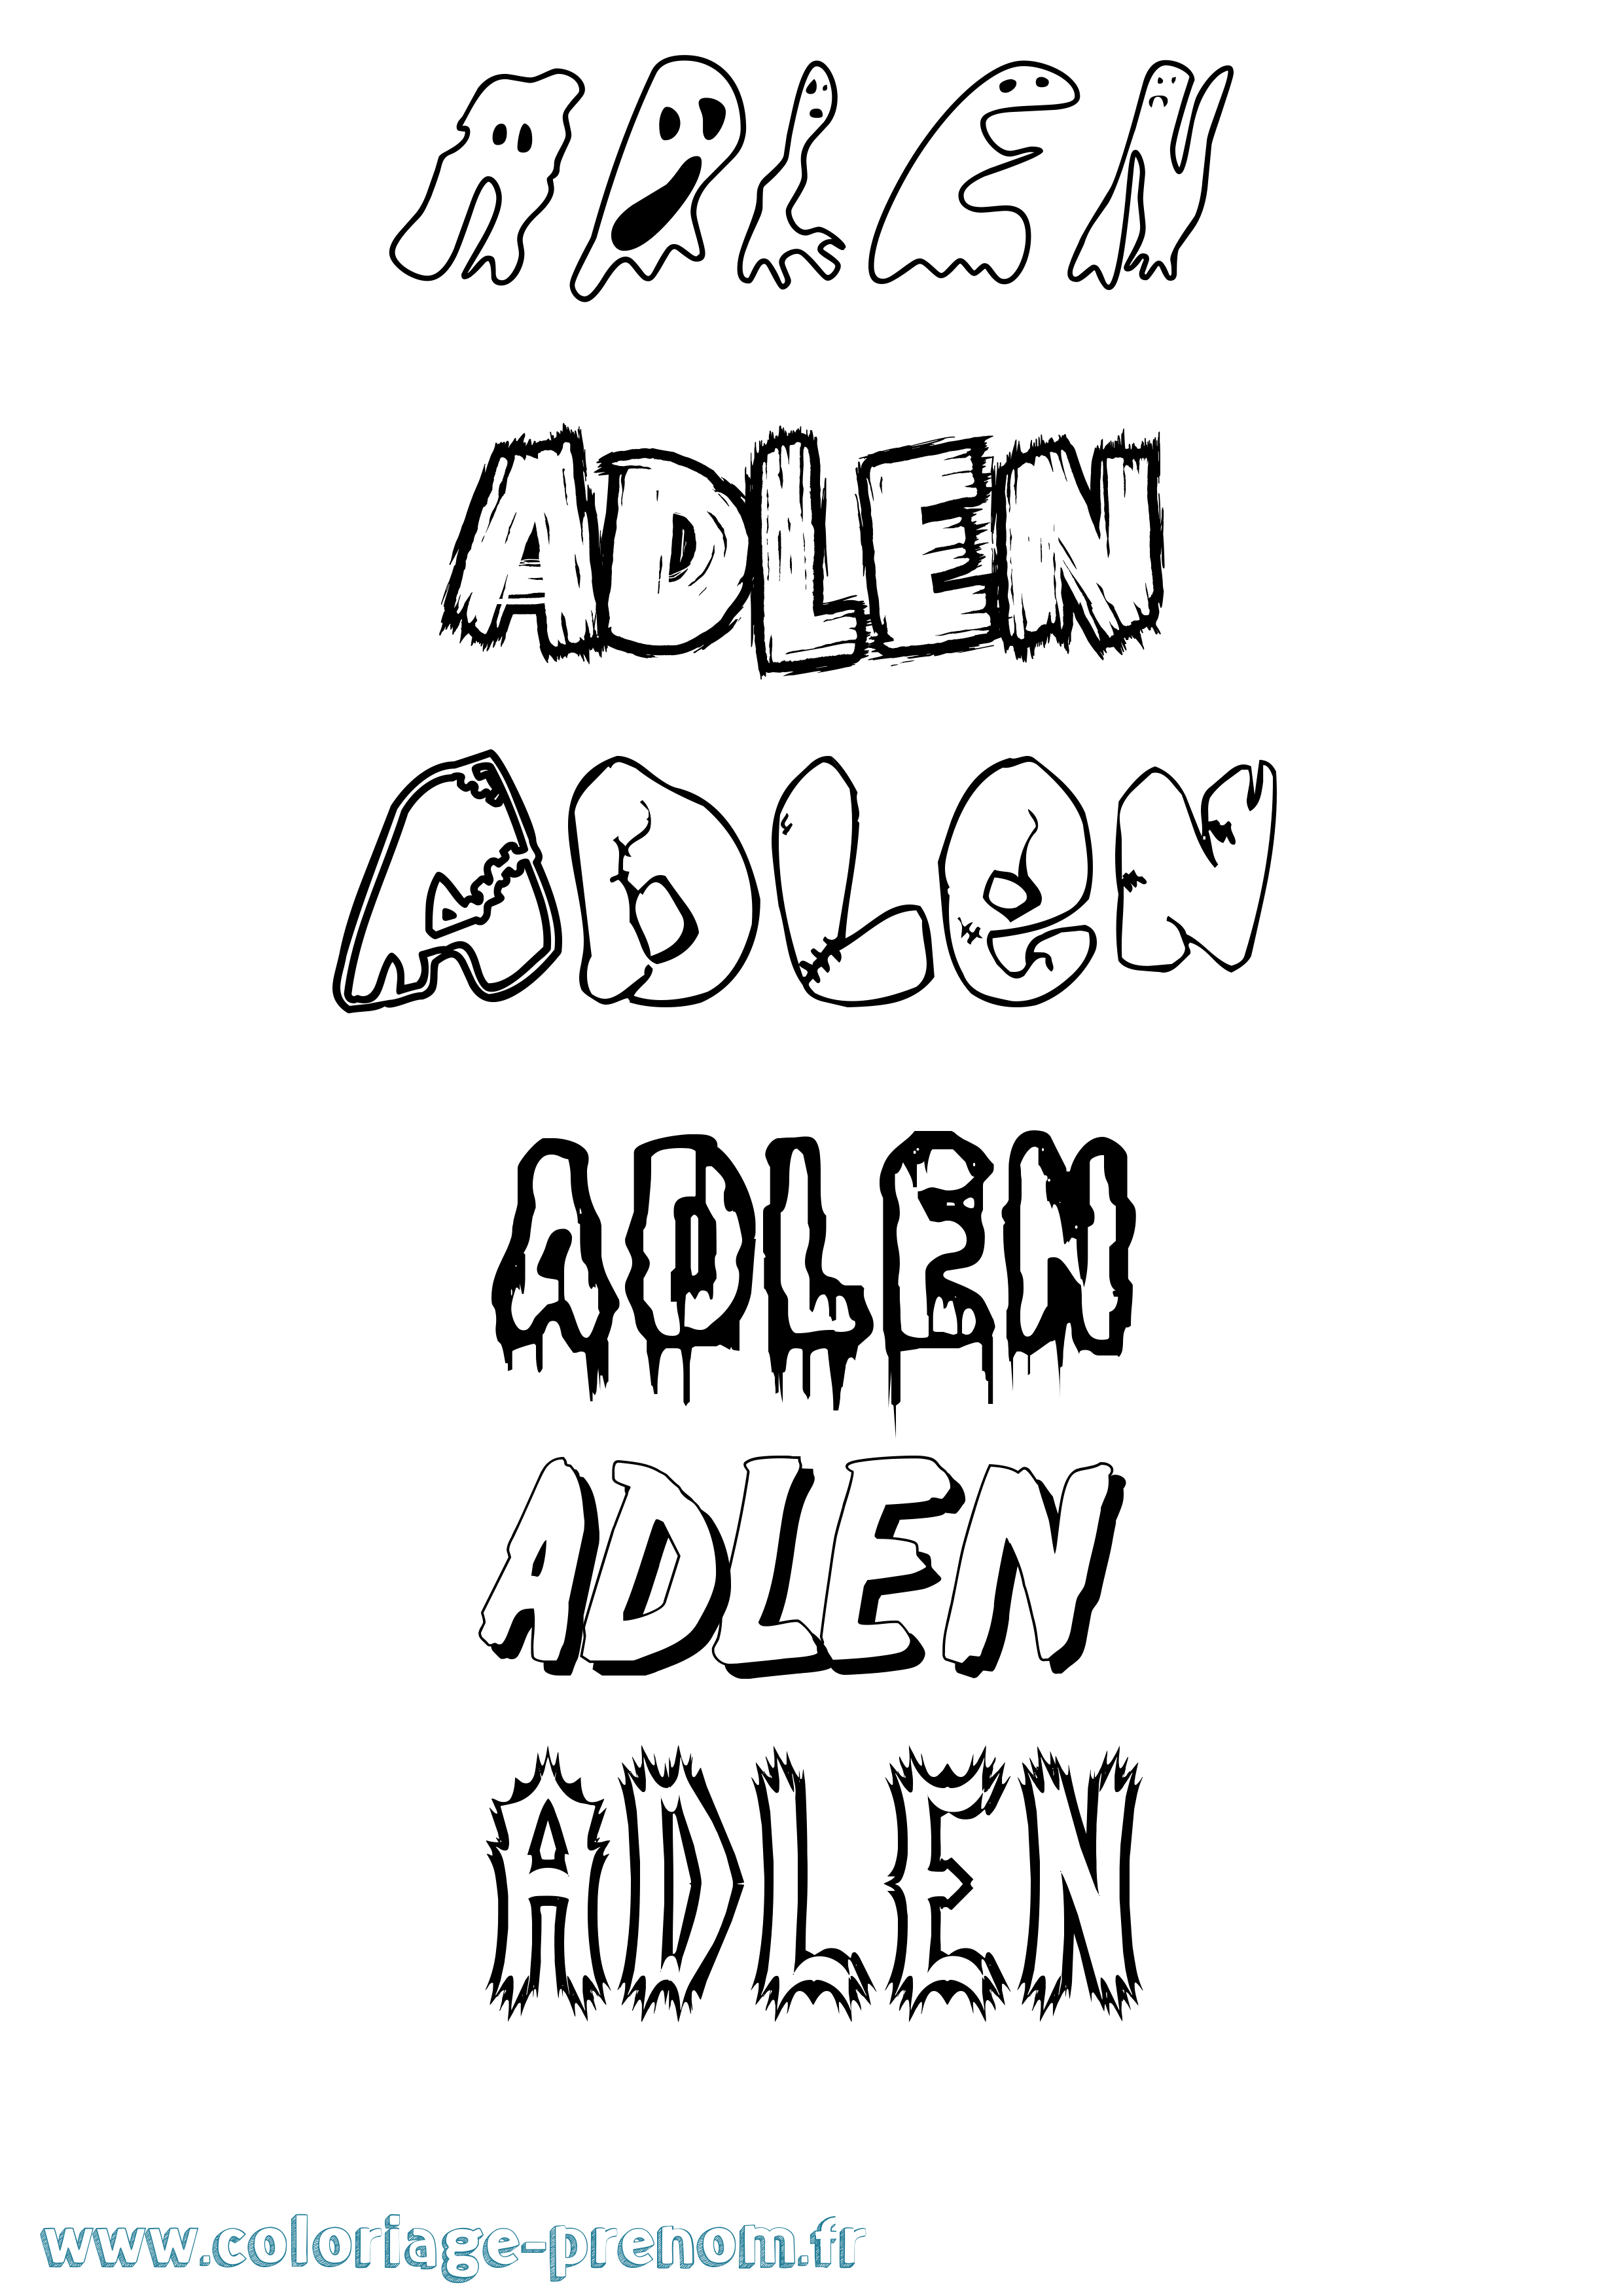 Coloriage prénom Adlen Frisson